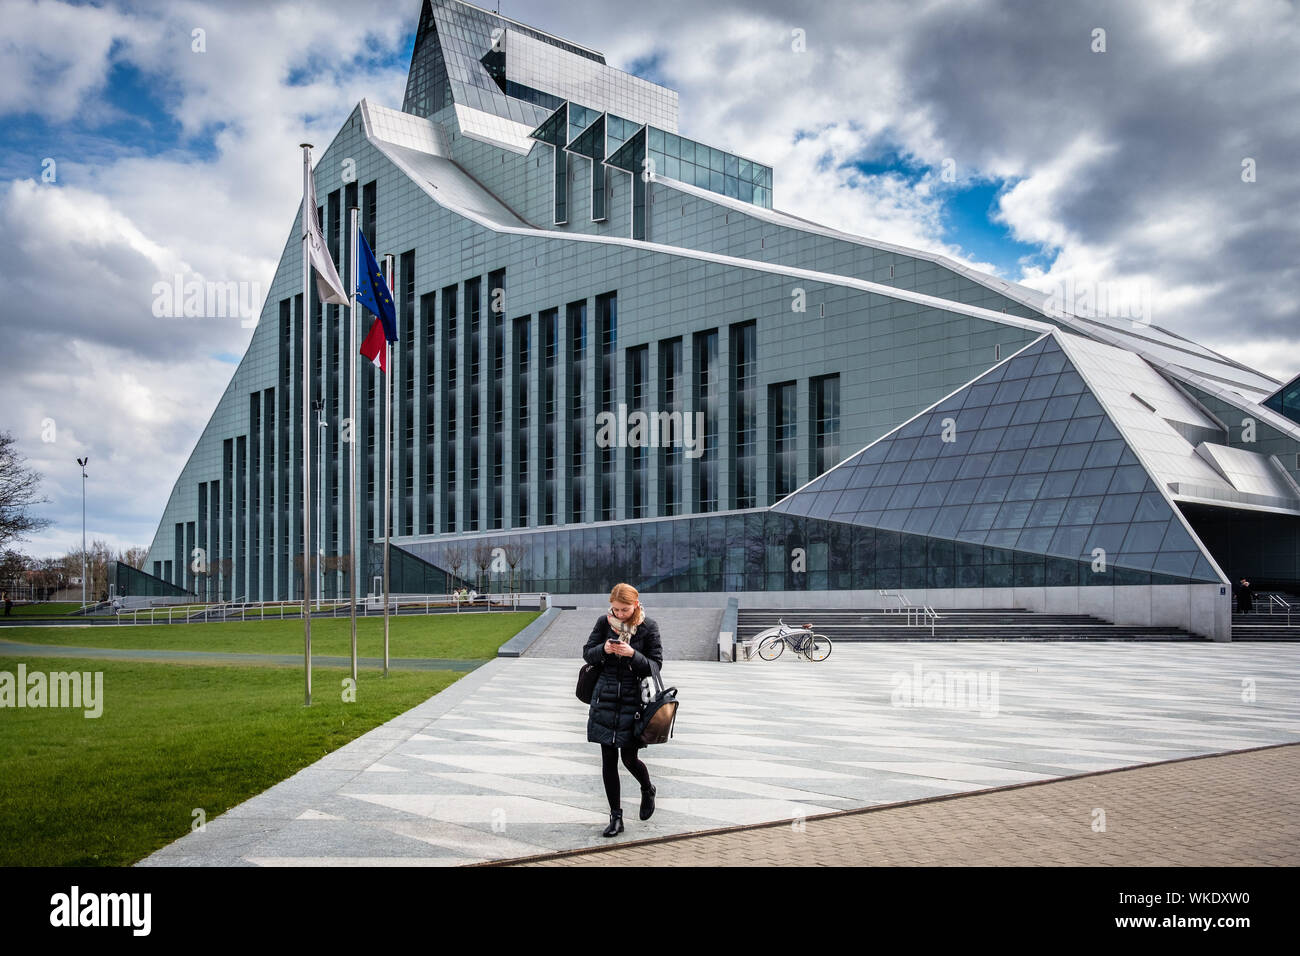 Lettland, Riga. Die nationale Bibliothek, 13-stöckiges Gebäude aus Glas und Metall, mit einer Sammlung von 6 Millionen Bücher, am Ufer des Flusses Dauvaga. Frau Stockfoto